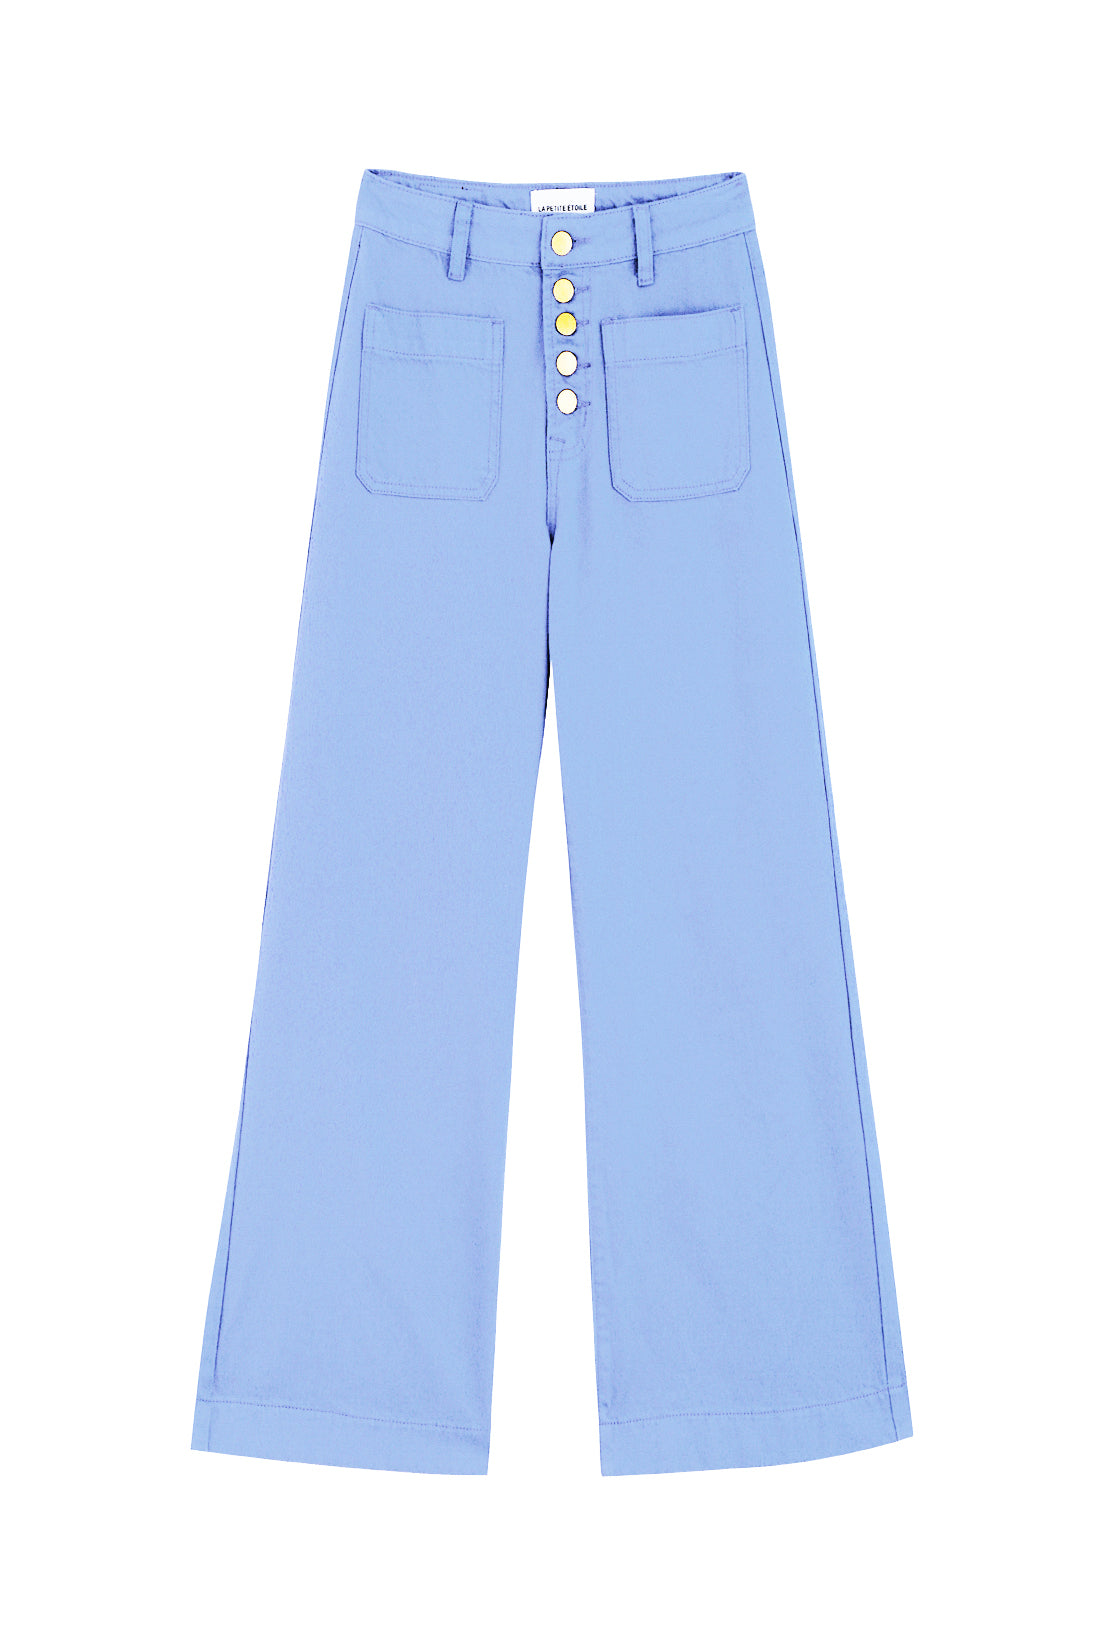 Jeans Atlanta T C - Bleu Ciel